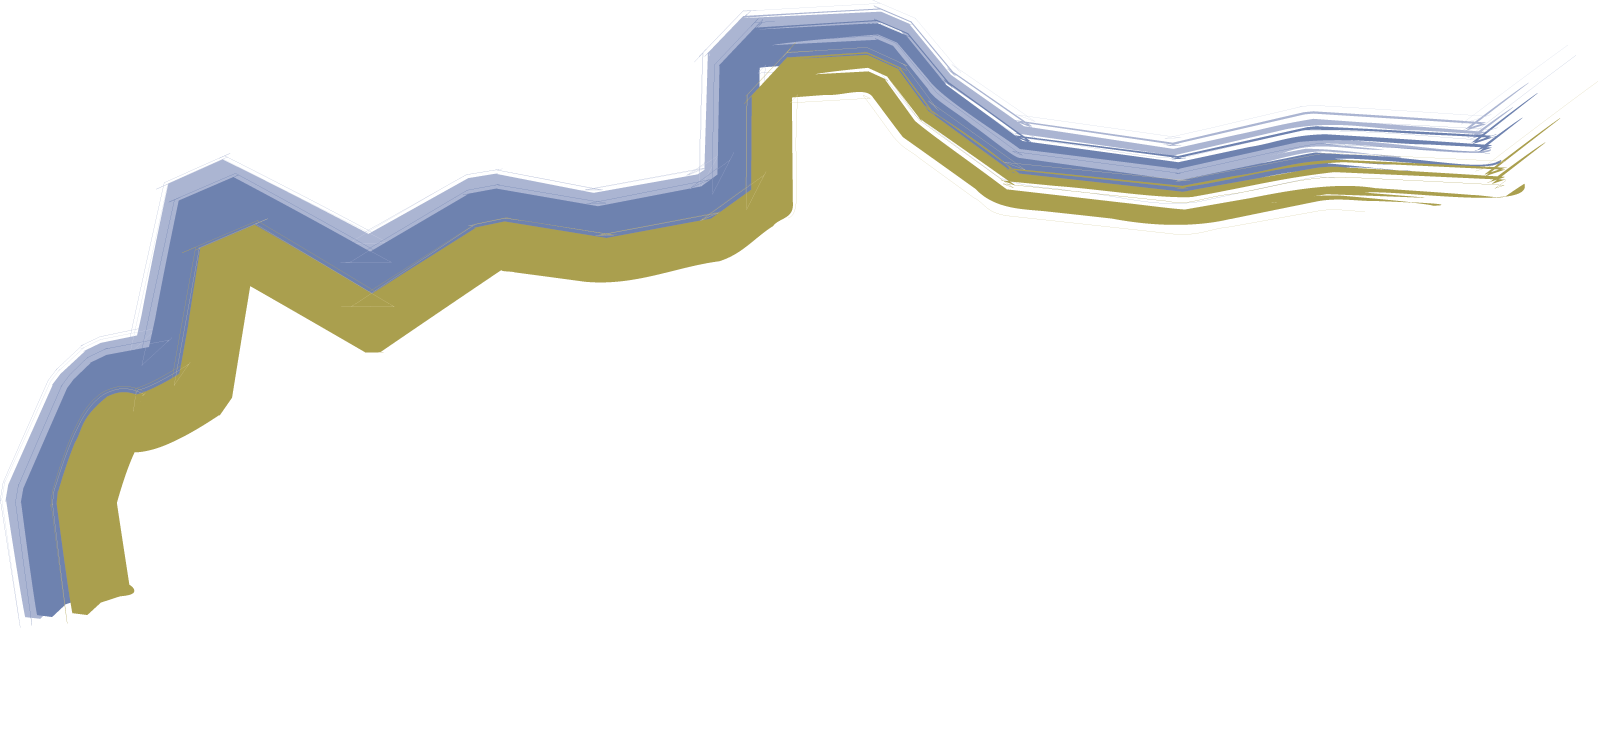 IBRU logo in white